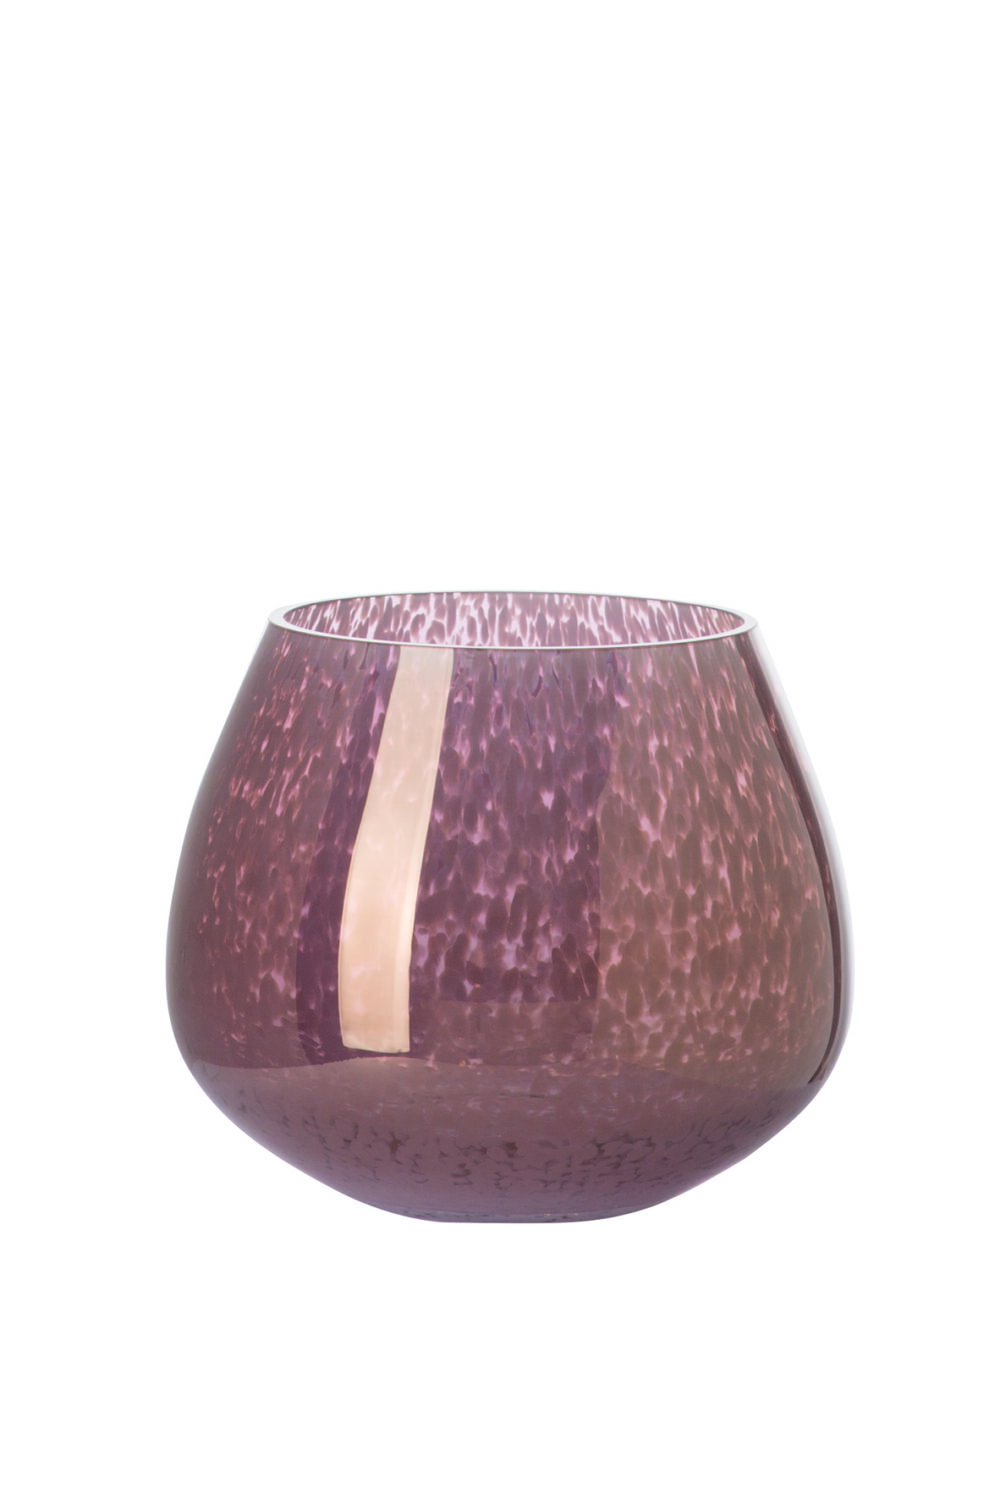 115367 Dekovase Vase Blumenvase Glas luster braun, weiß NICOLA 22 cm